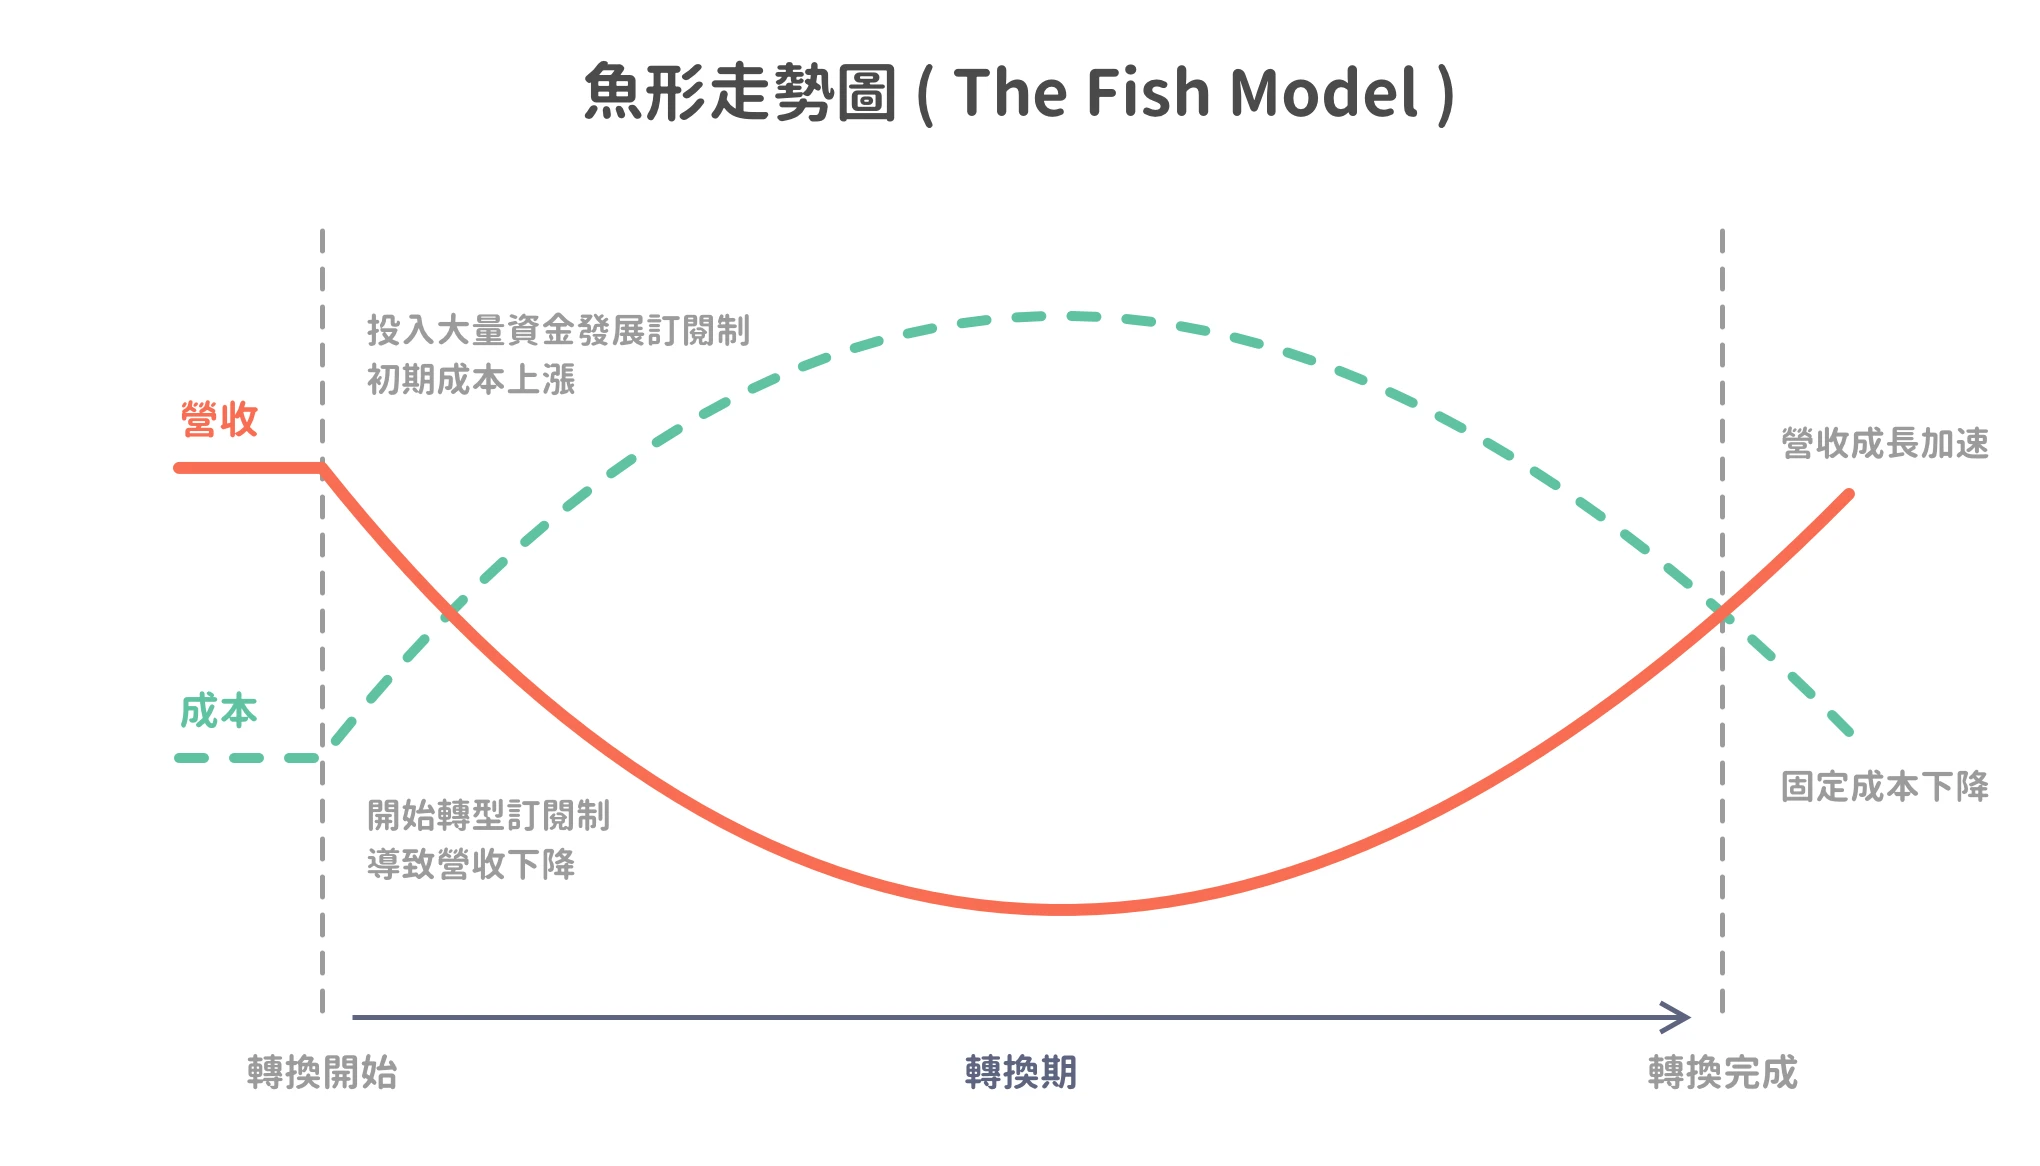 圖 2. 魚形走勢圖 ( The Fish Model ) 